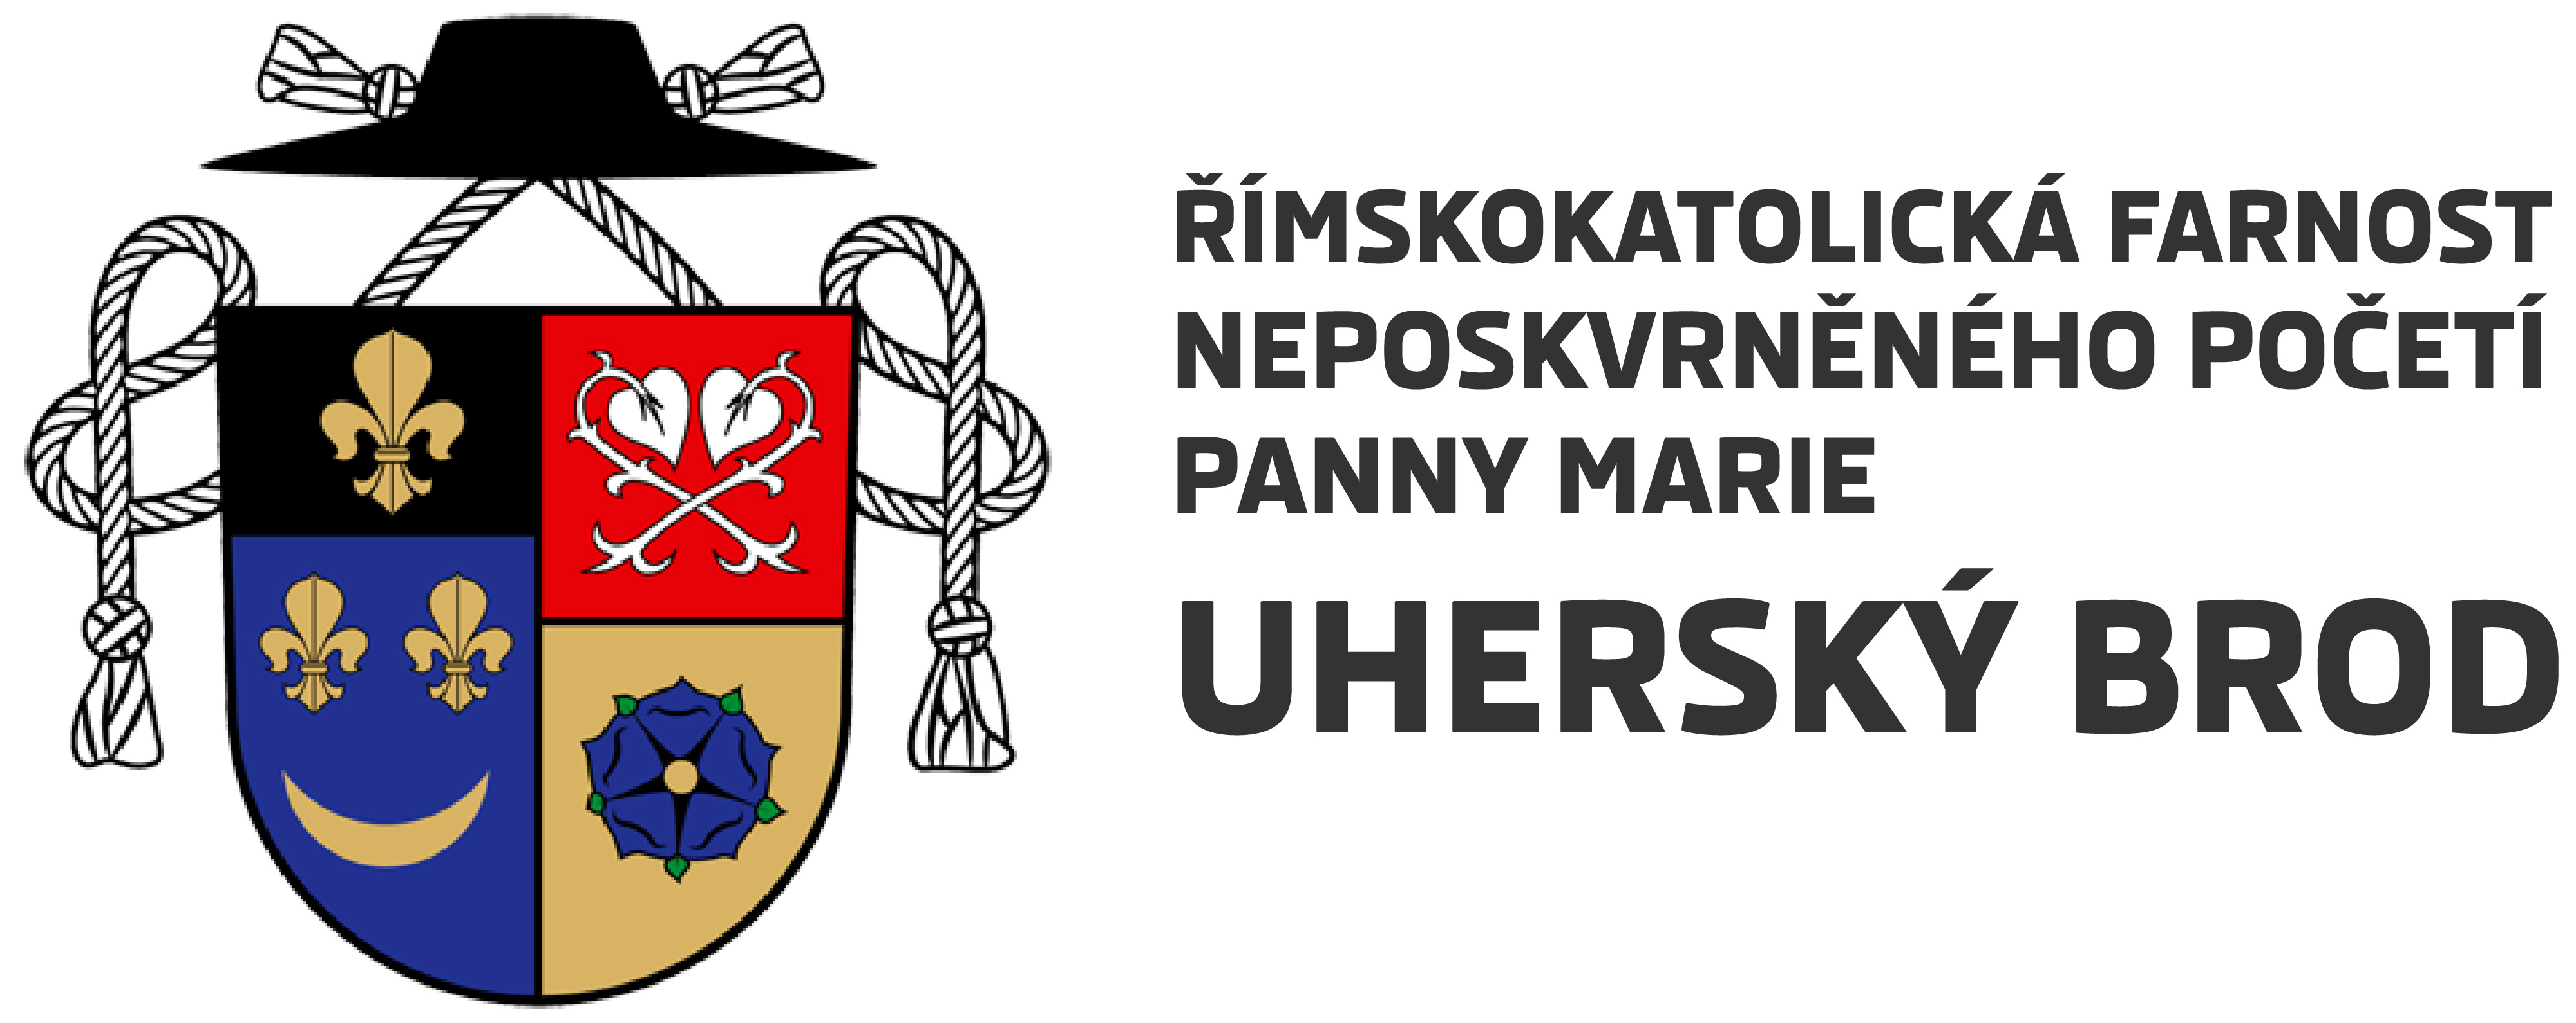 Logo Novinky ze serveru církev.cz - Římskokatolická farnost Uherský Brod